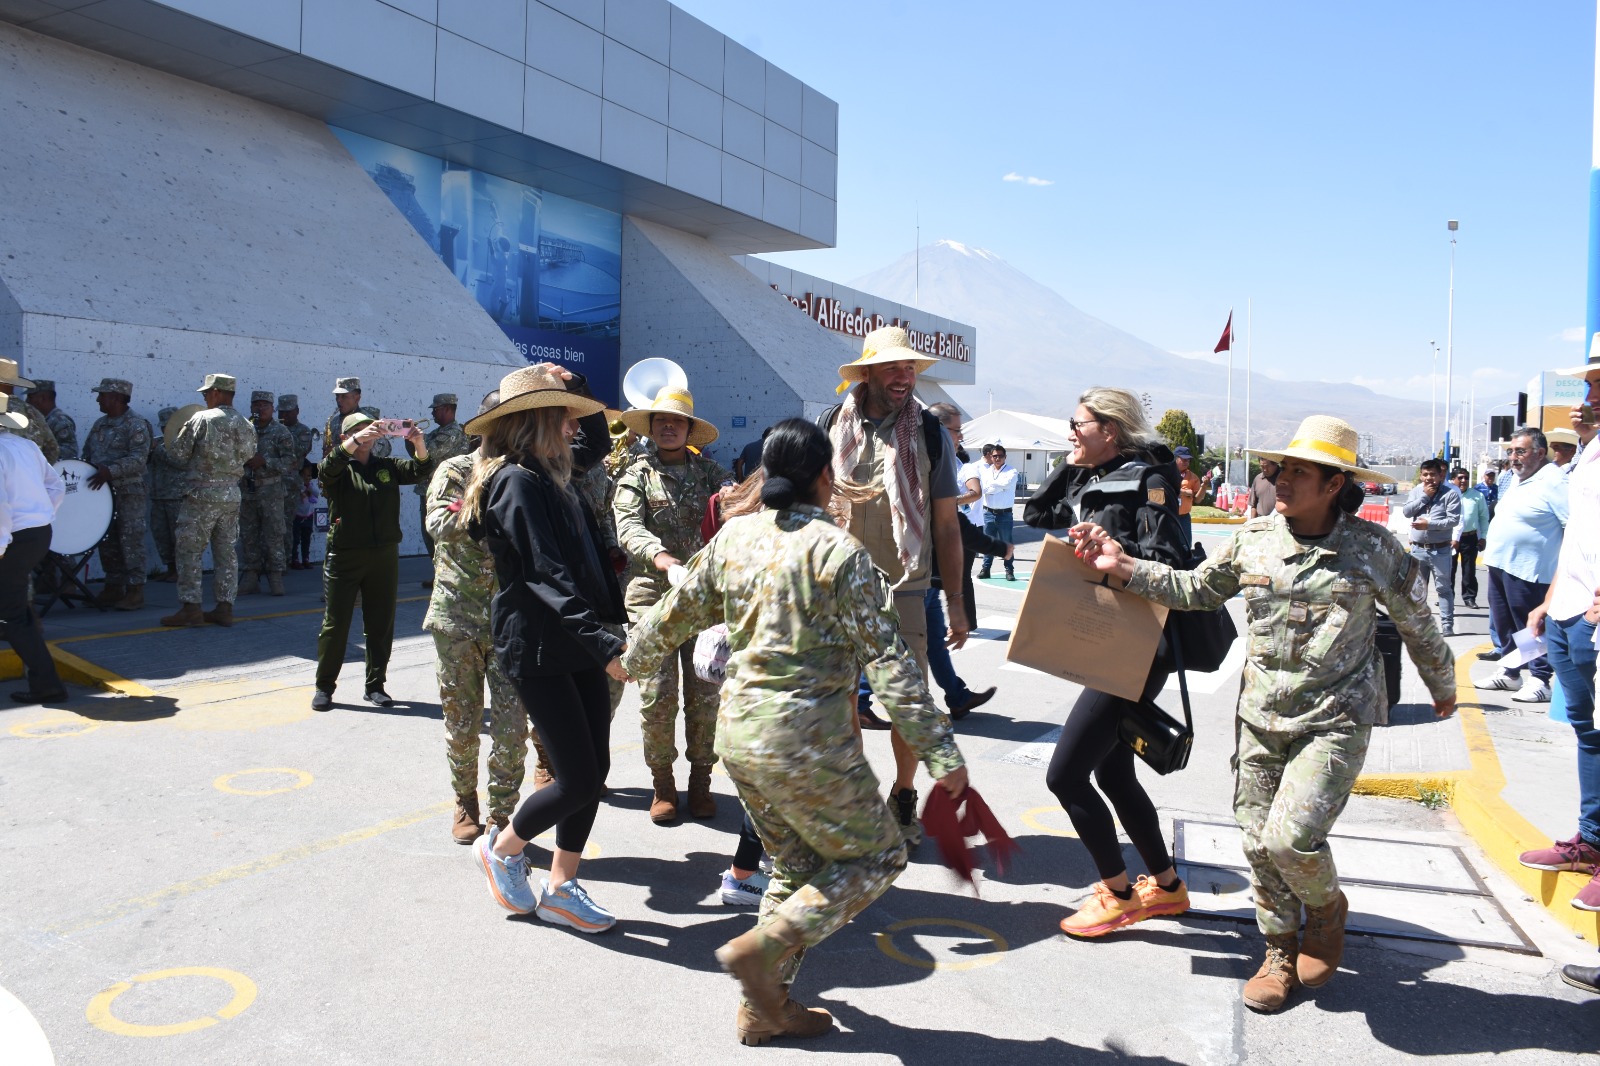 GALERÍA. A ritmo de música arequipeña, miembros del Ejército Peruano dieron bienvenida a turistas en el aeropuerto Alfredo Rodríguez Ballón